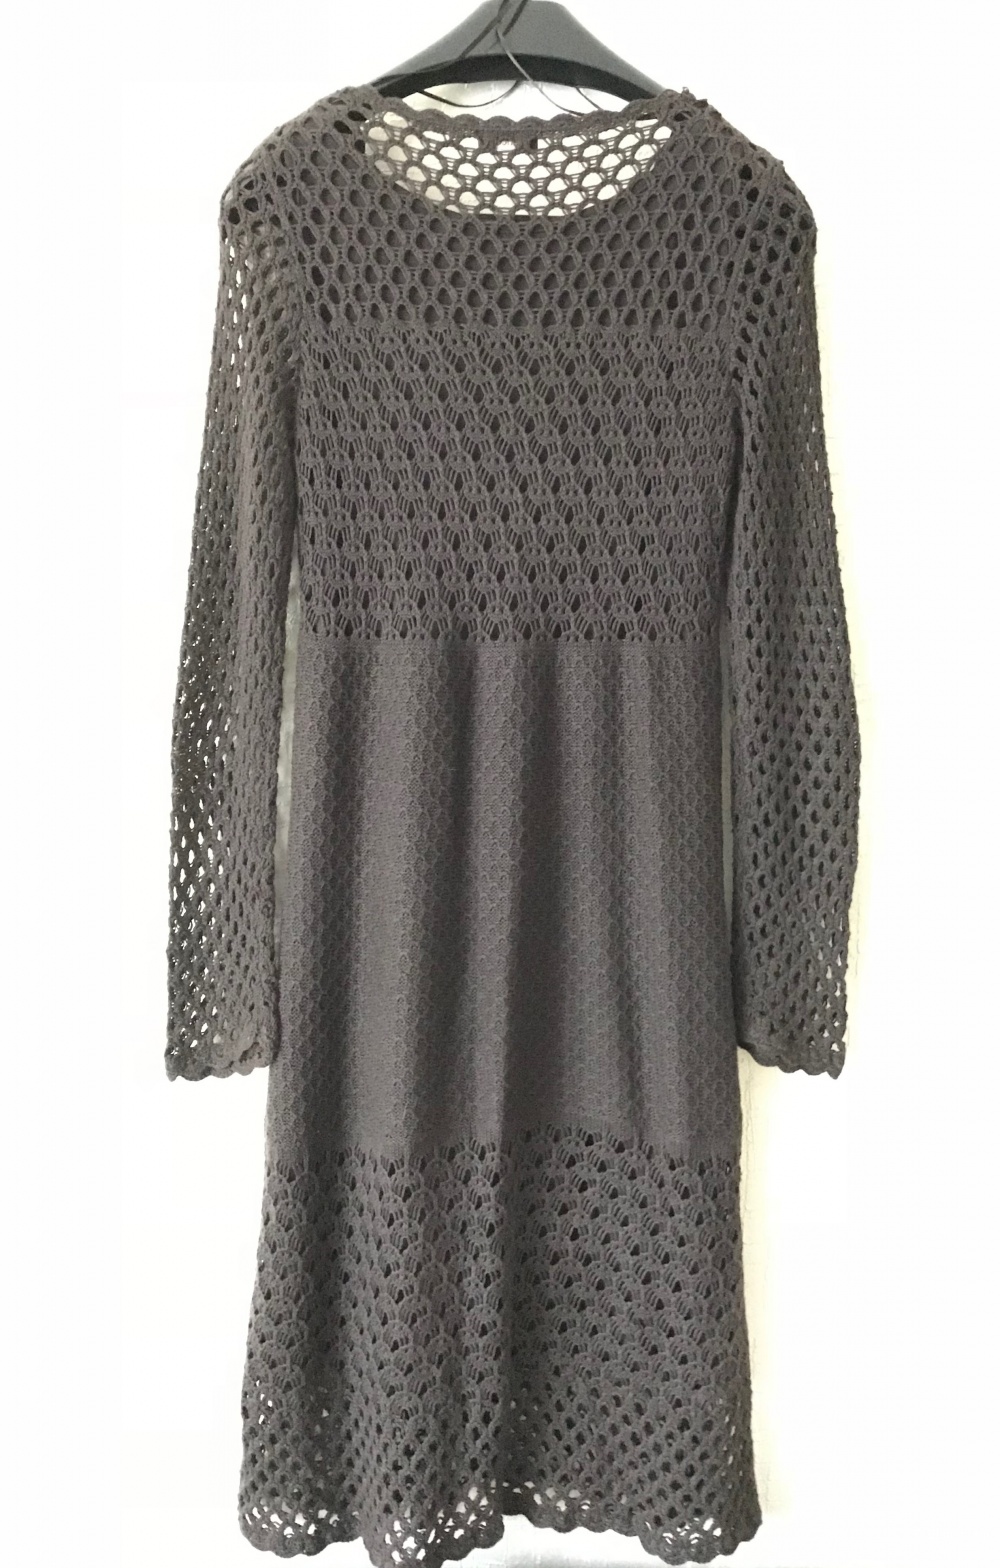 Вязаное ажурное платье от GLANCE, р-р 46 (М)